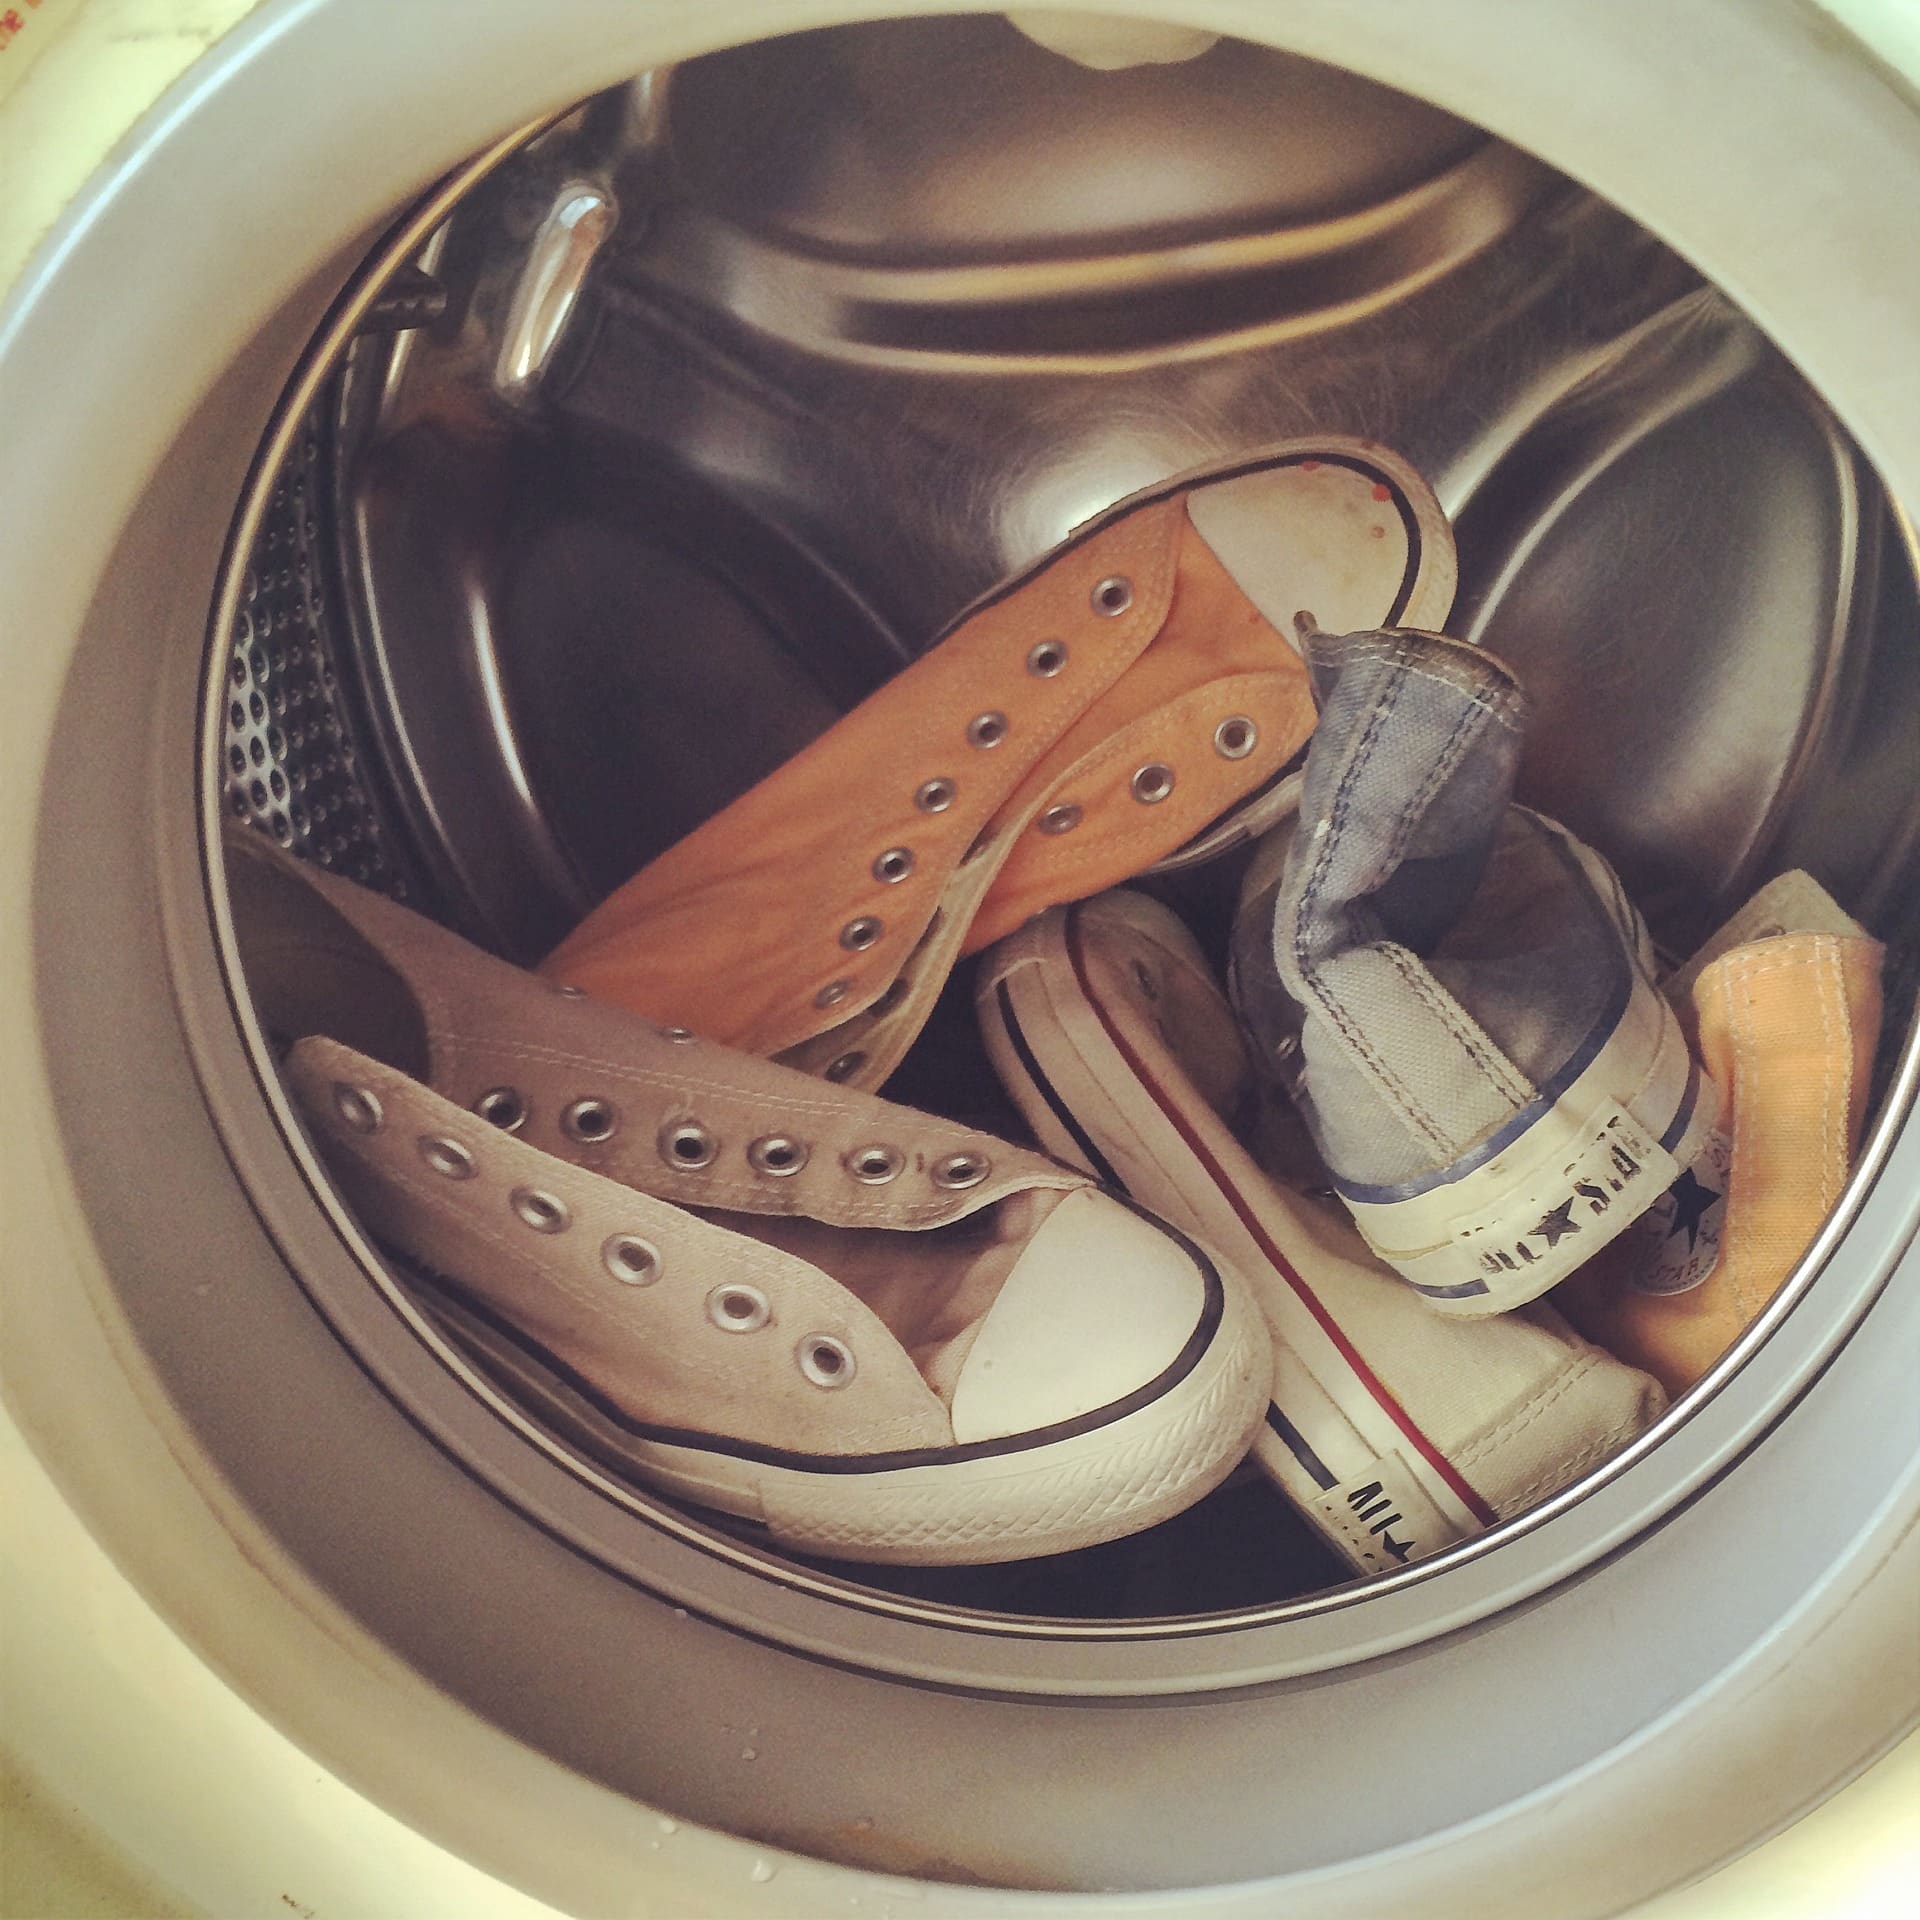 Comment laver ses chaussures en machine ? 